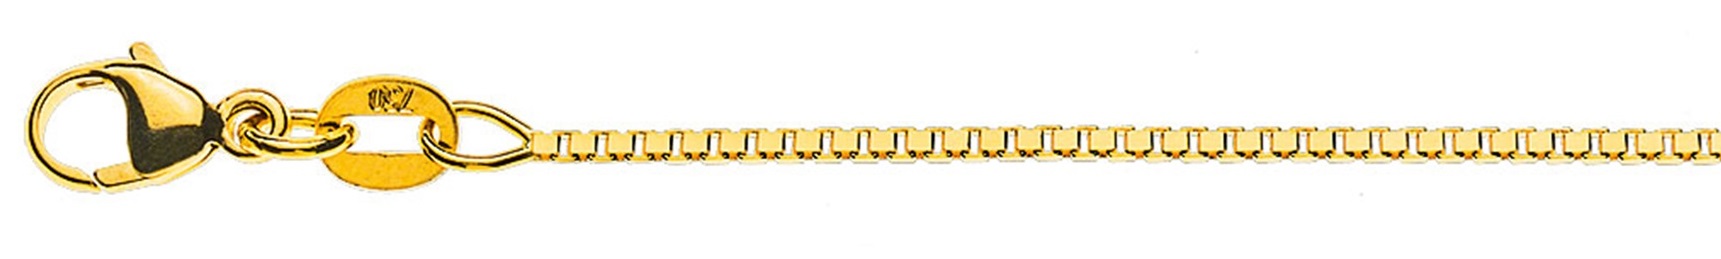 AURONOS Prestige Collier en or jaune 18K vénitien diamanté 55cm 1.1mm